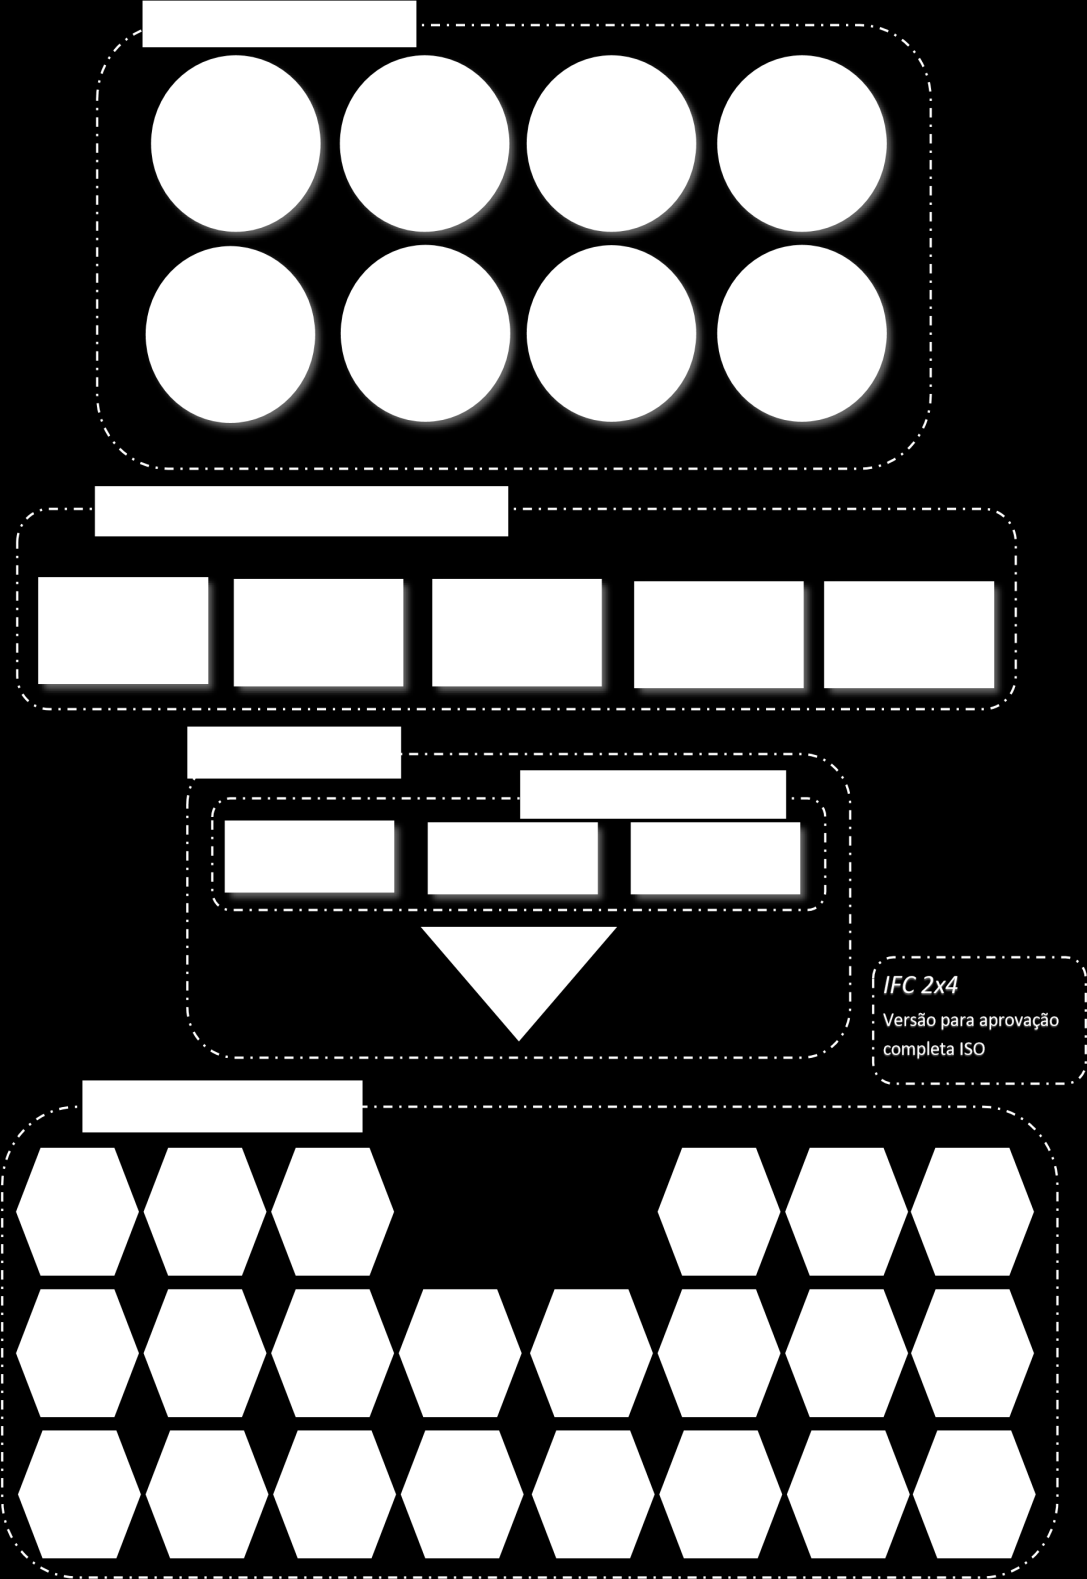 O modelo IFC é estruturado hierarquicamente por vários módulos. Cada módulo agrupa diversas entidades onde são definidos conceitos.